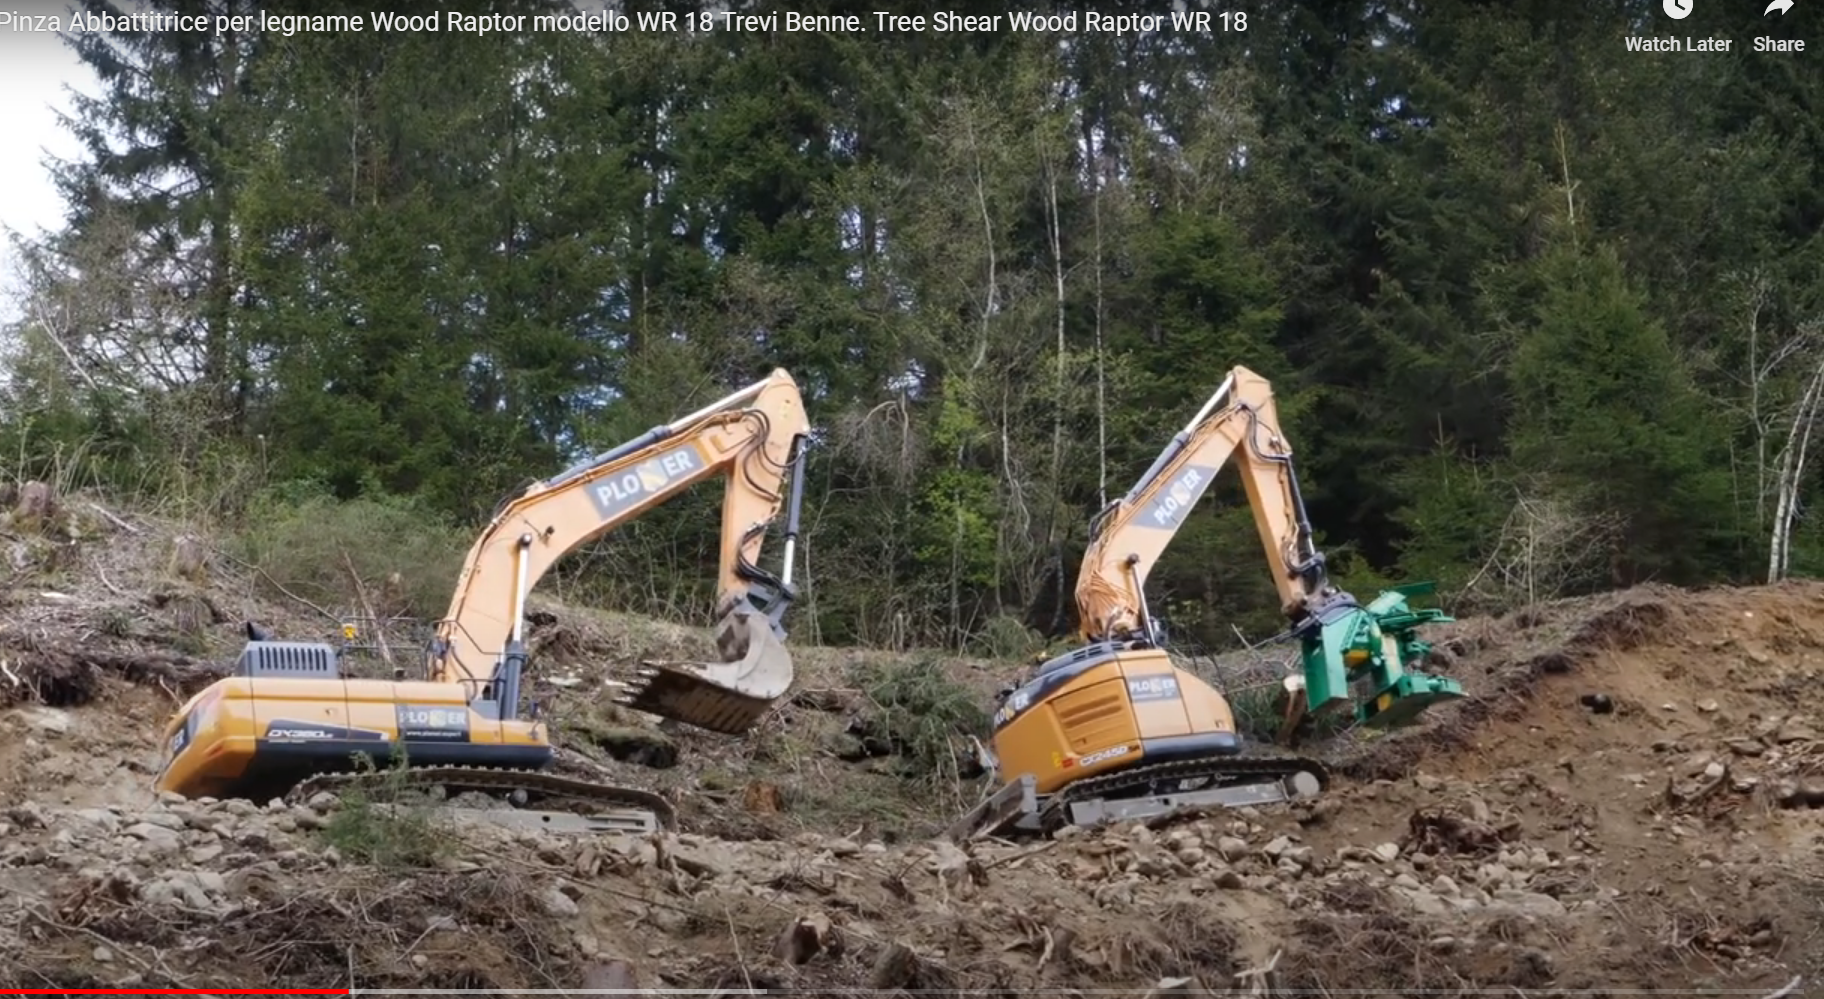 TreviBenne Wood Raptor Tree Shears - 400-550mm - 12-30T excavators